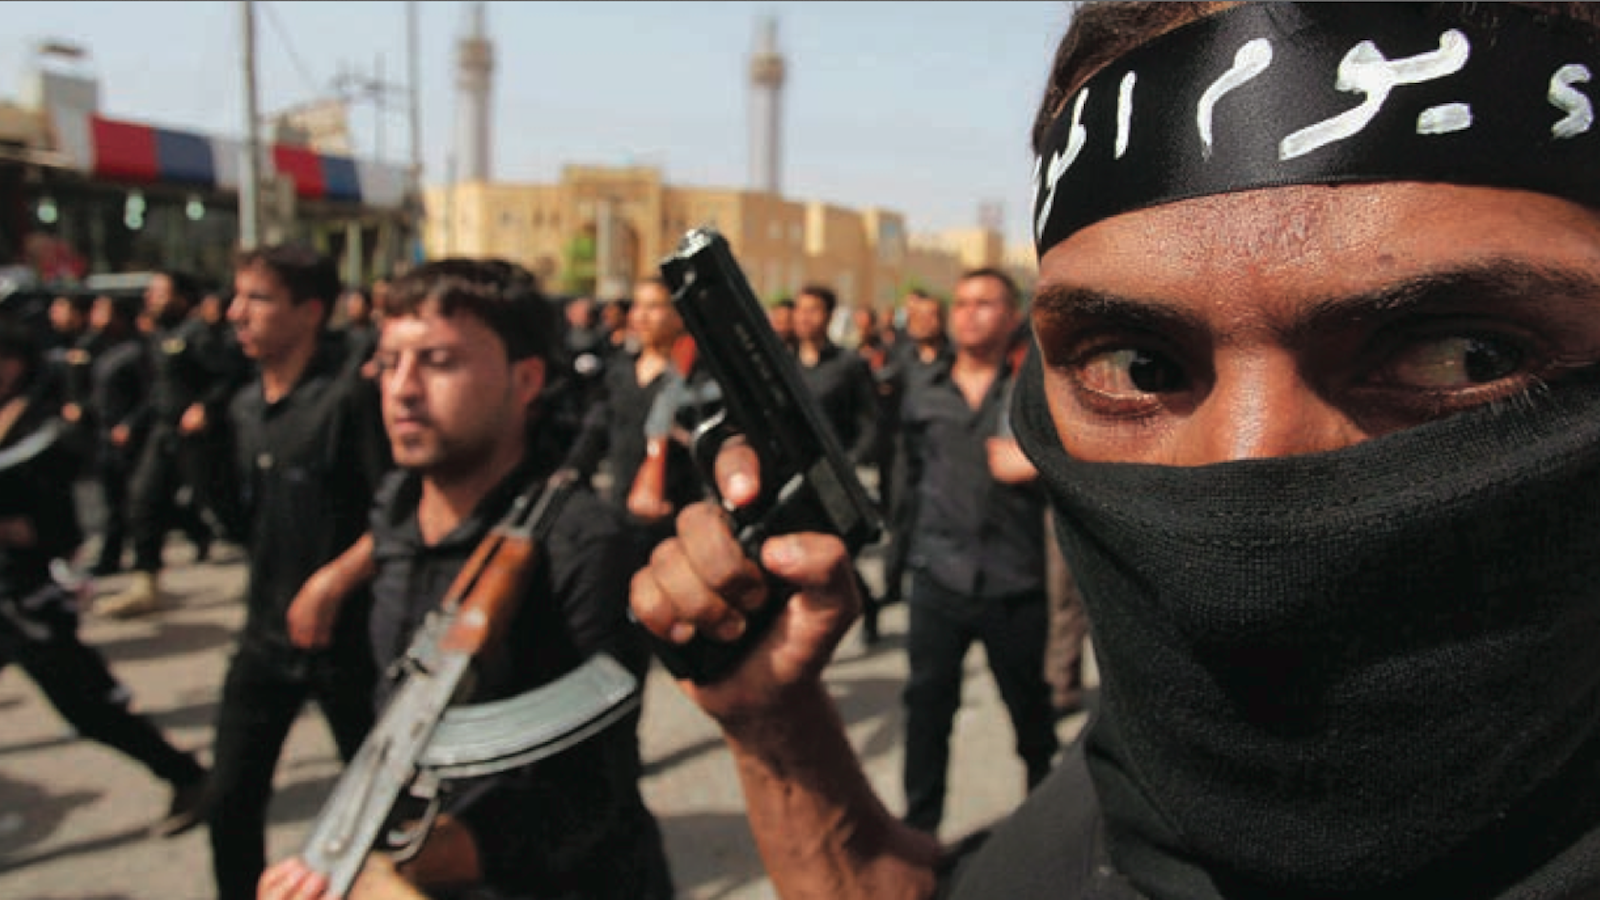 Νέα προπαγάνδα των τζιχαντιστών: Απειλές ISIS για επιθέσεις στις ΗΠΑ και «θάνατο» στον Ντ. Τραμπ (φωτό)